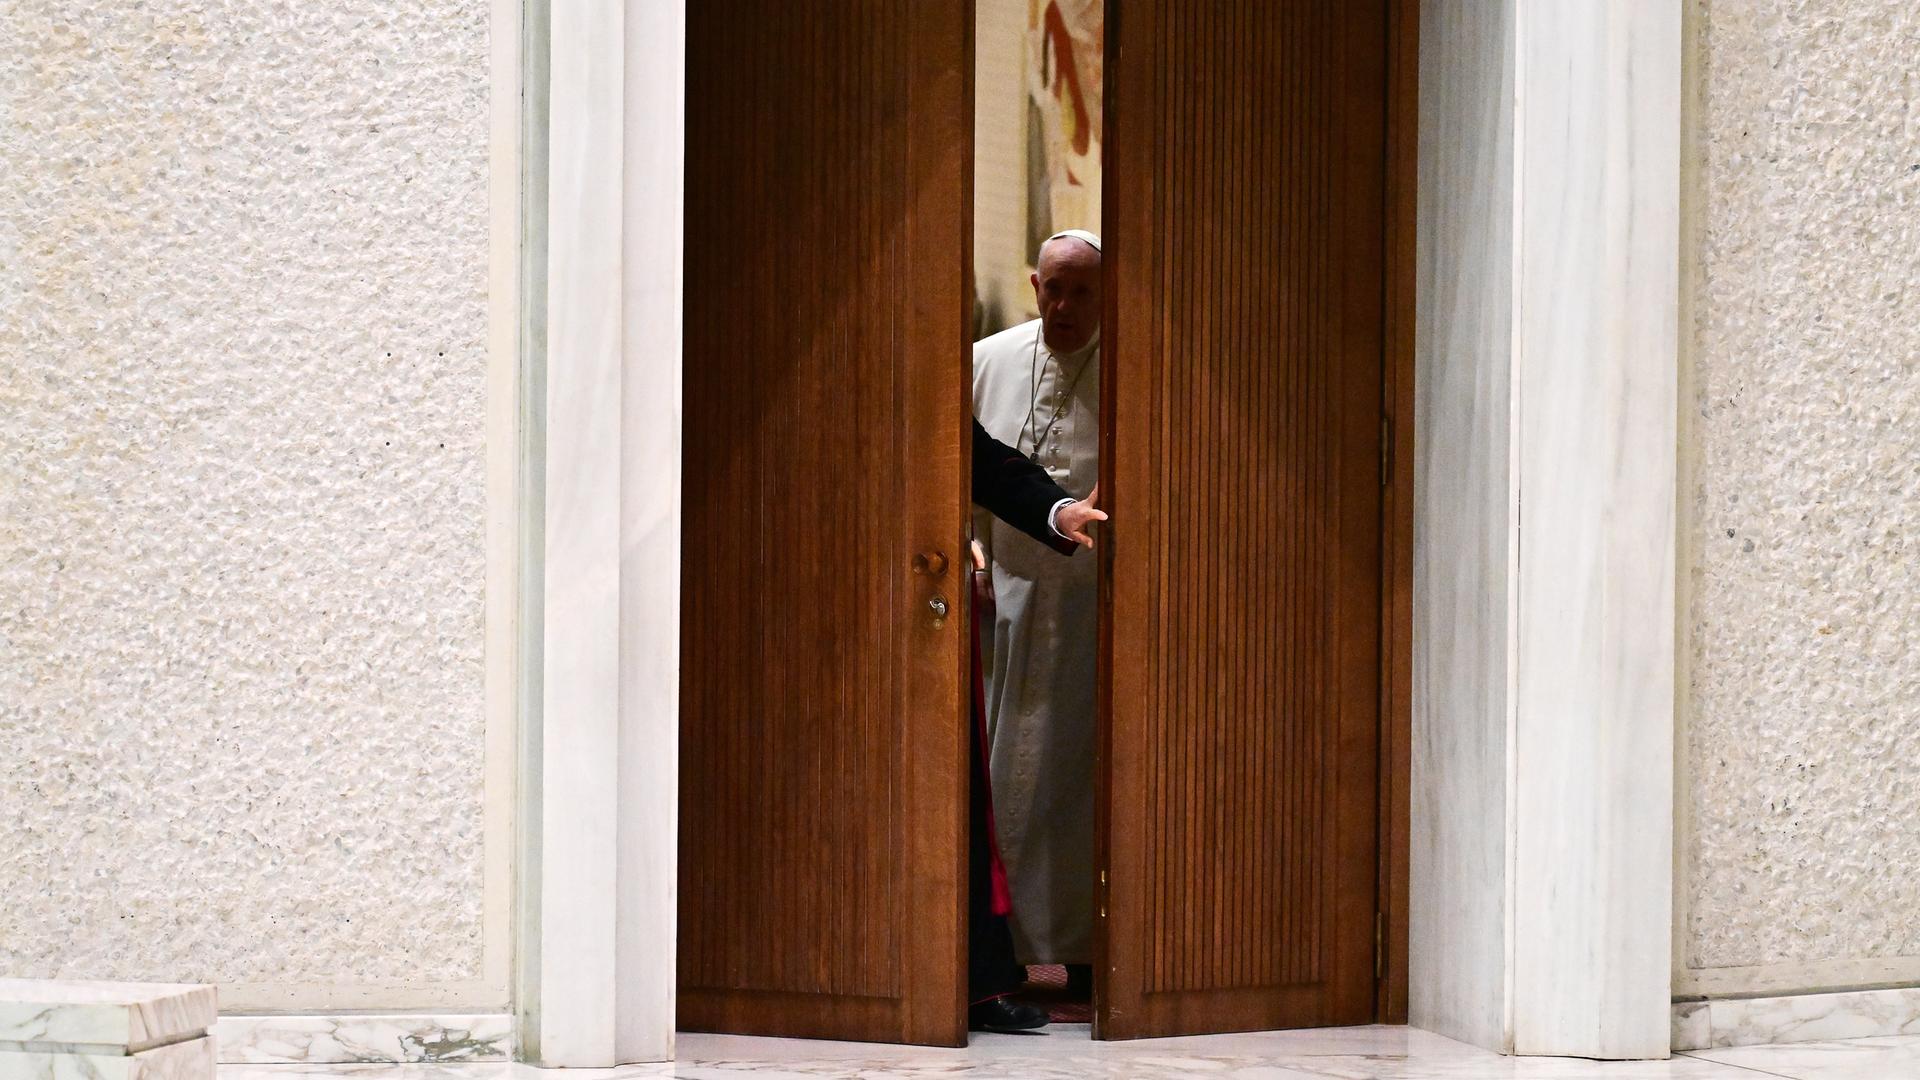 In Rom öffnet sich die größe Tür zur Generalaudienz bei Papst Franziskus I. einen Spalt weit.

